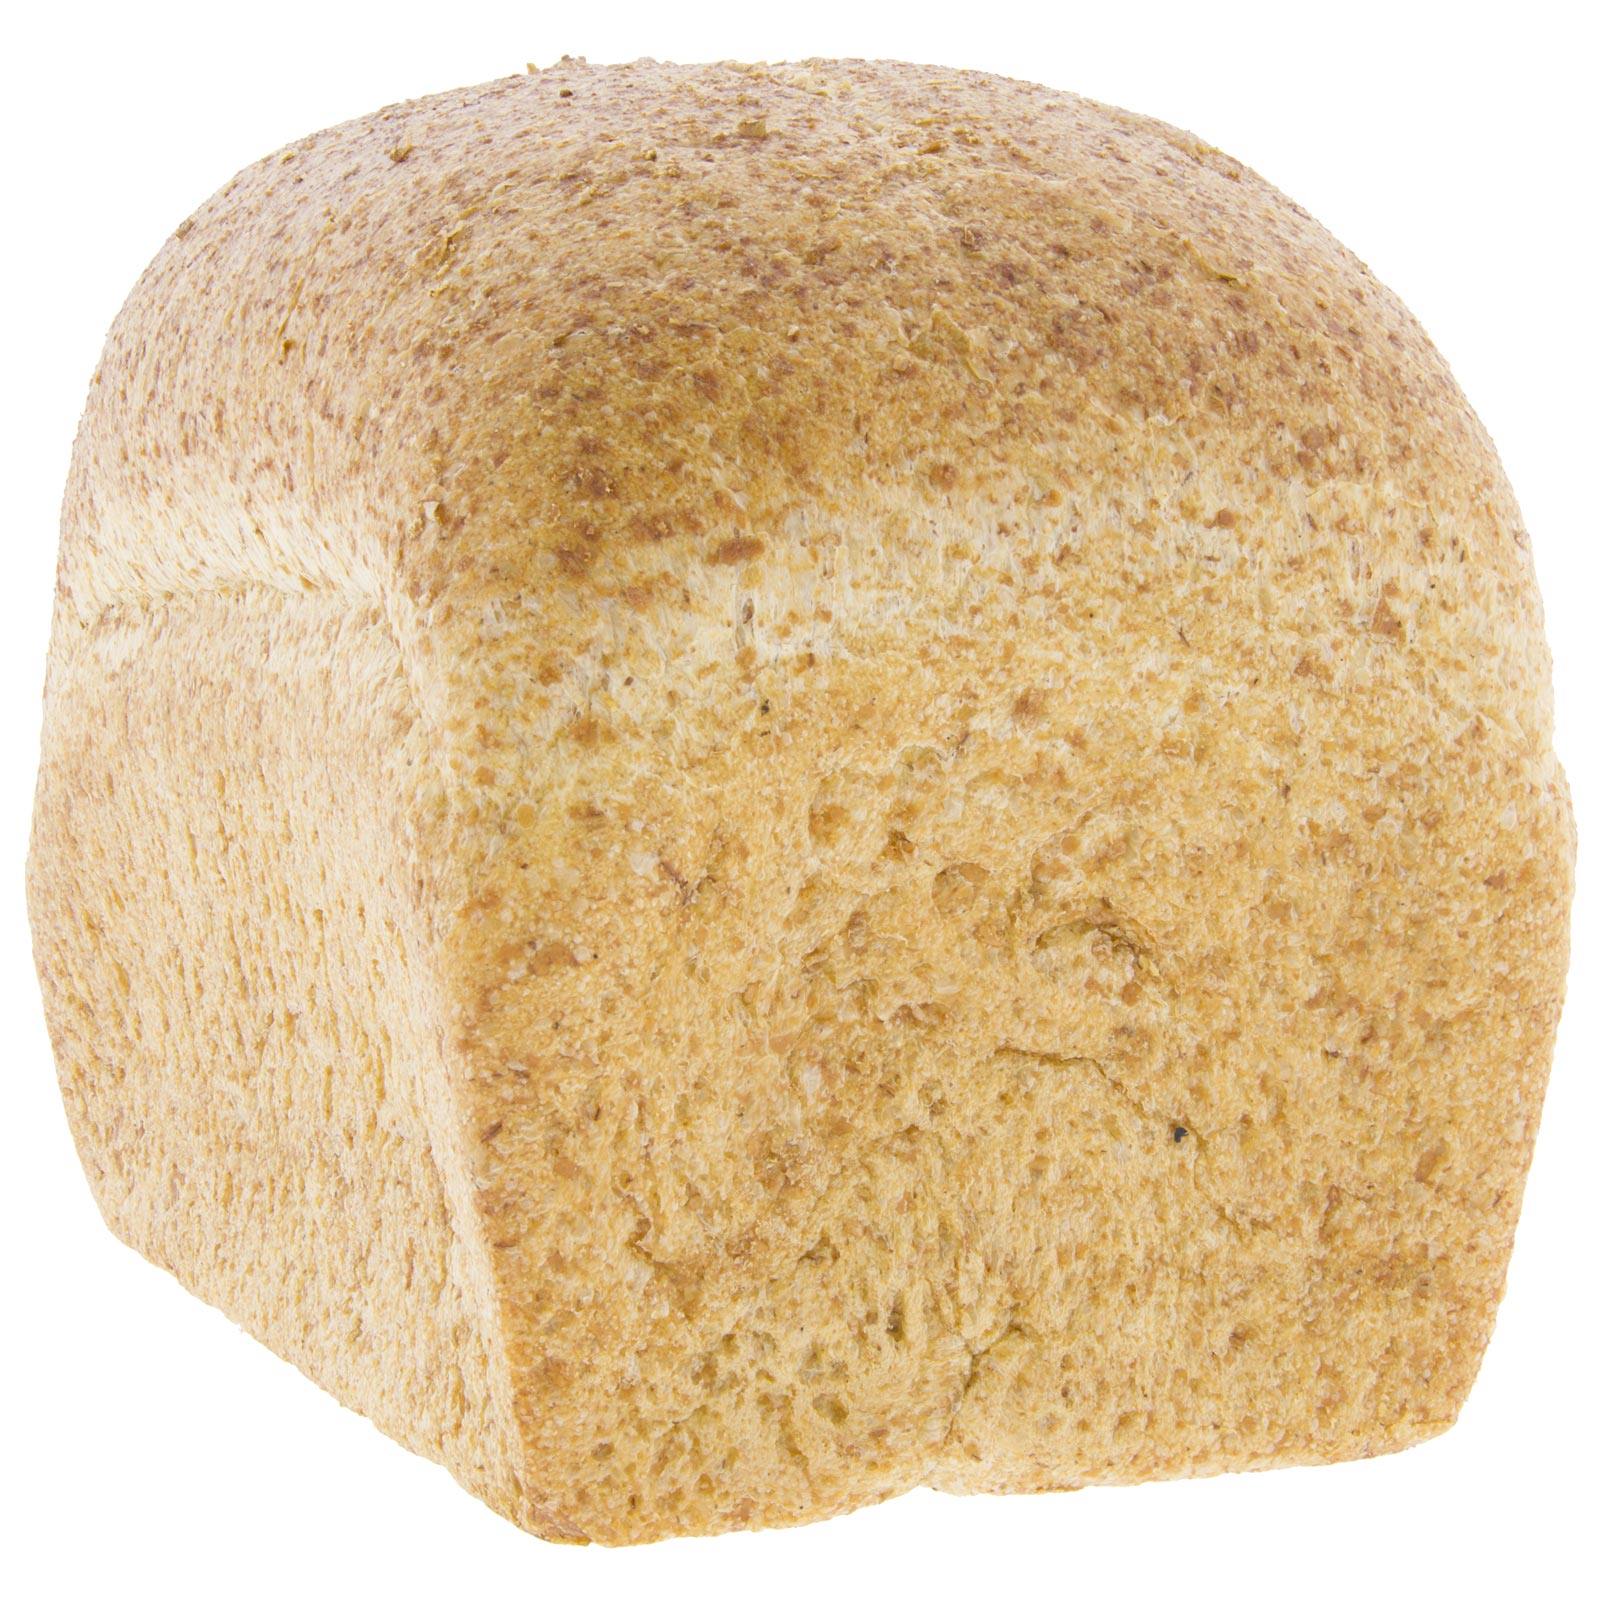 Pan de Molde de Espelta Integral SIN SAL (PACK 8uds x 400g) 3.2Kg (sin cortar) - Biopanadería